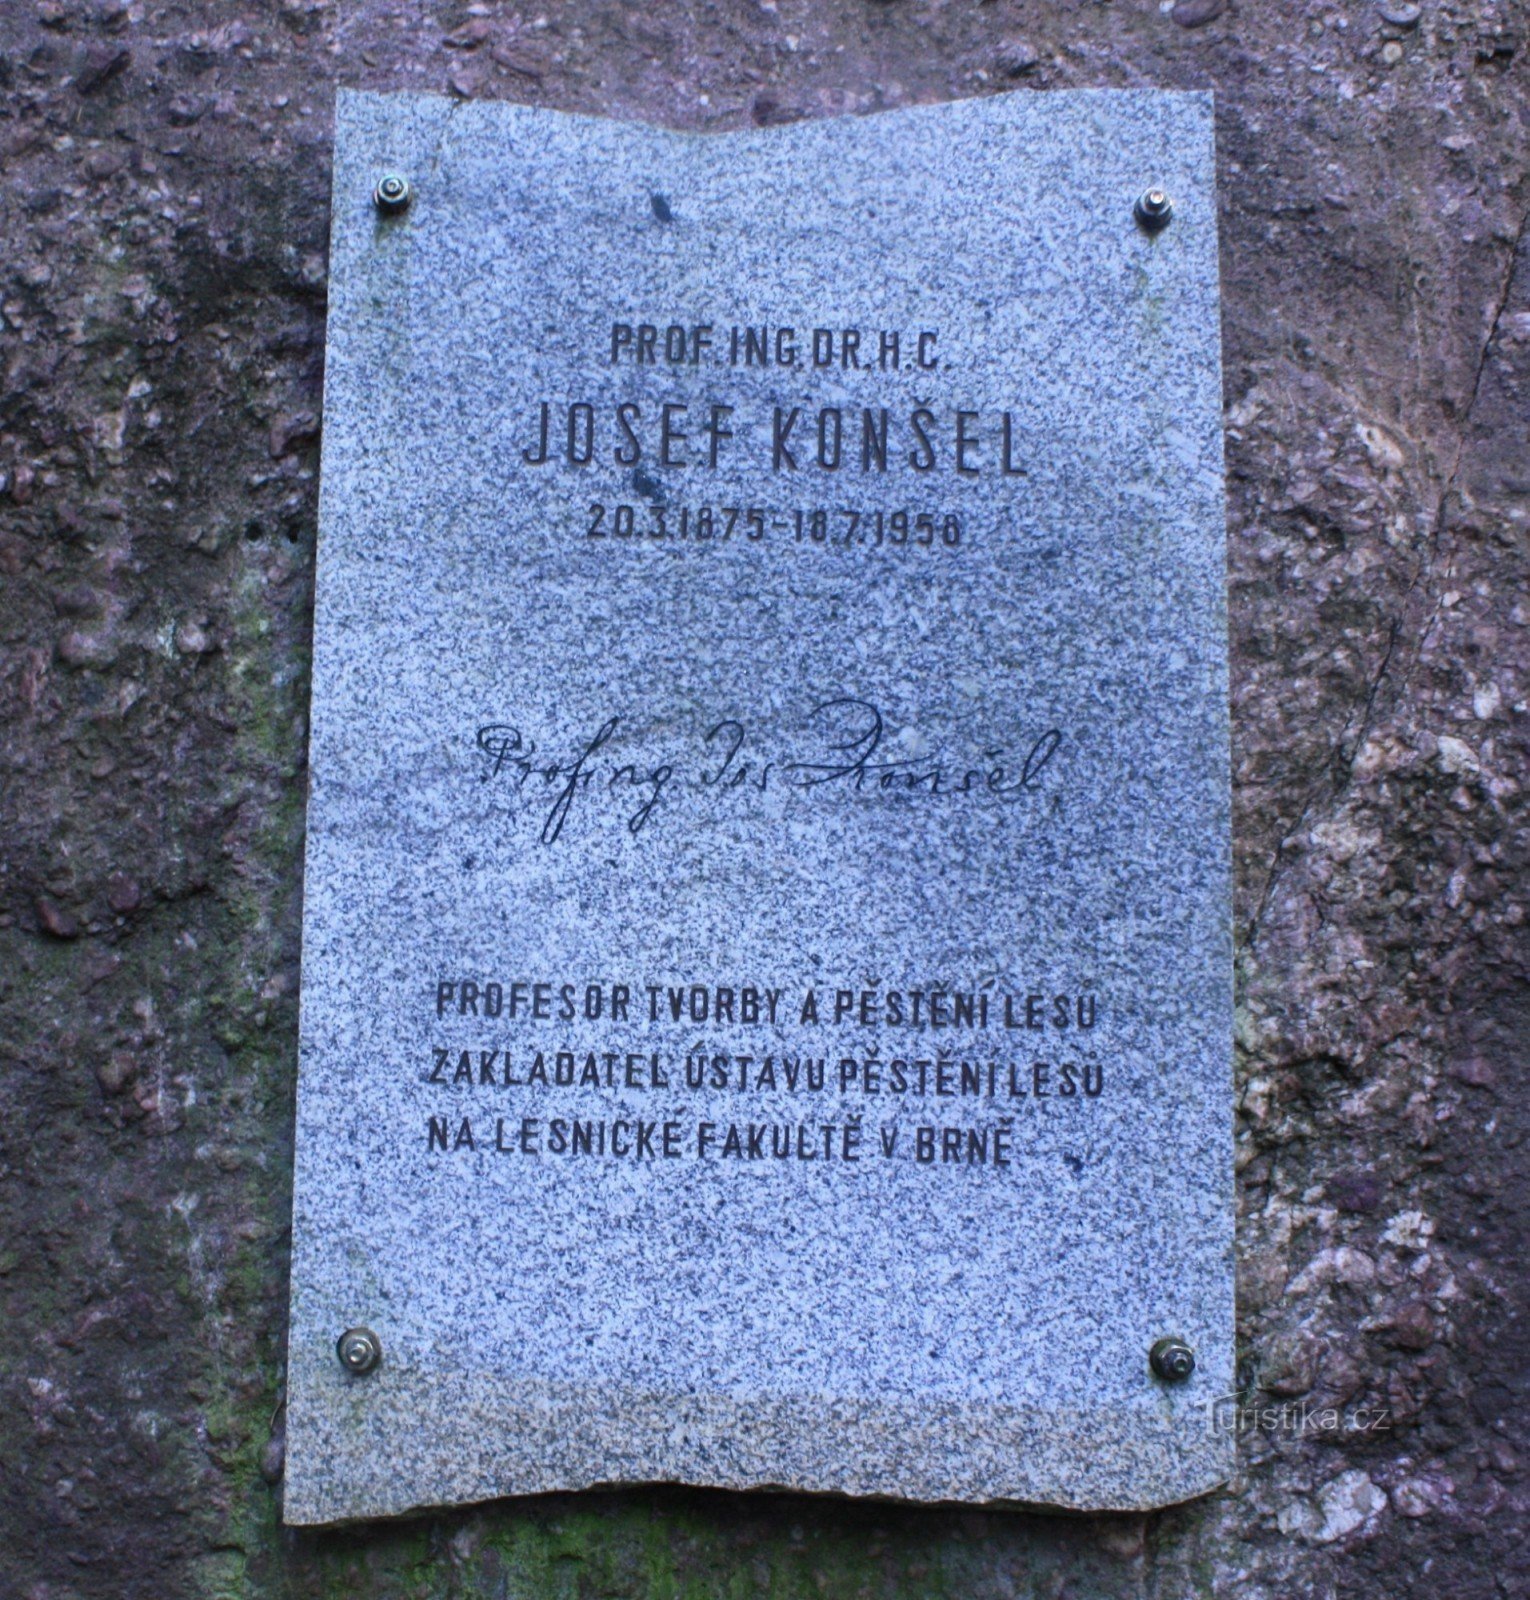 Памятник Йозефу Коншелю